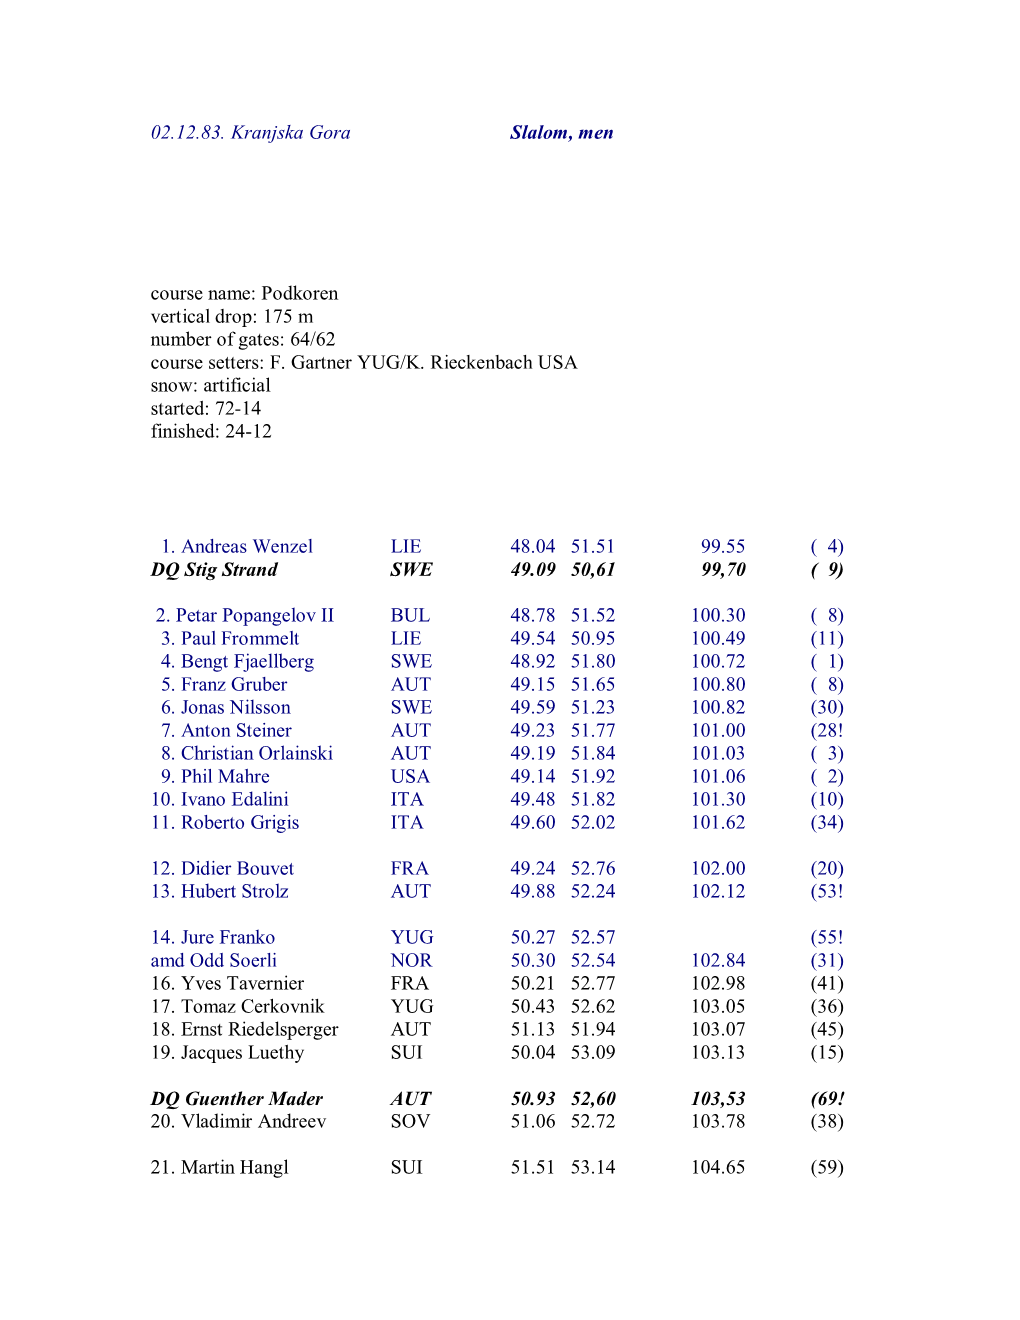 02.12.83. Kranjska Gora Slalom, Men Course Name: Podkoren Vertical Drop: 175 M Number of Gates: 64/62 Course Setters: F. Gartner